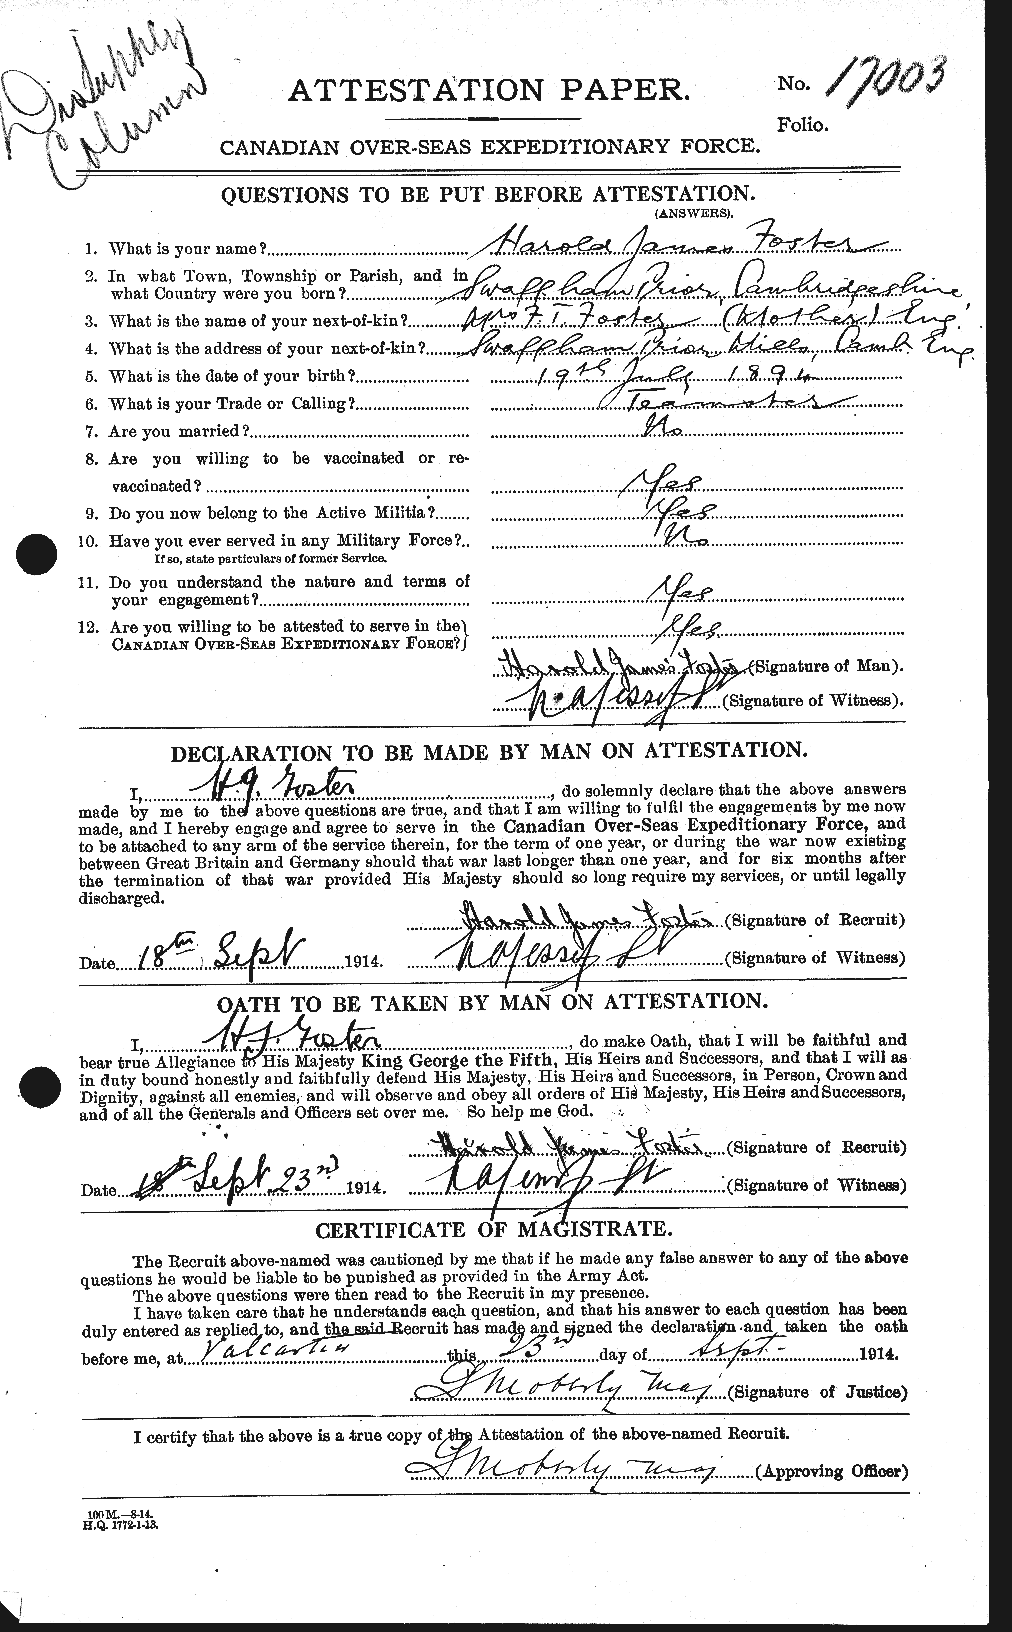 Dossiers du Personnel de la Première Guerre mondiale - CEC 330728a